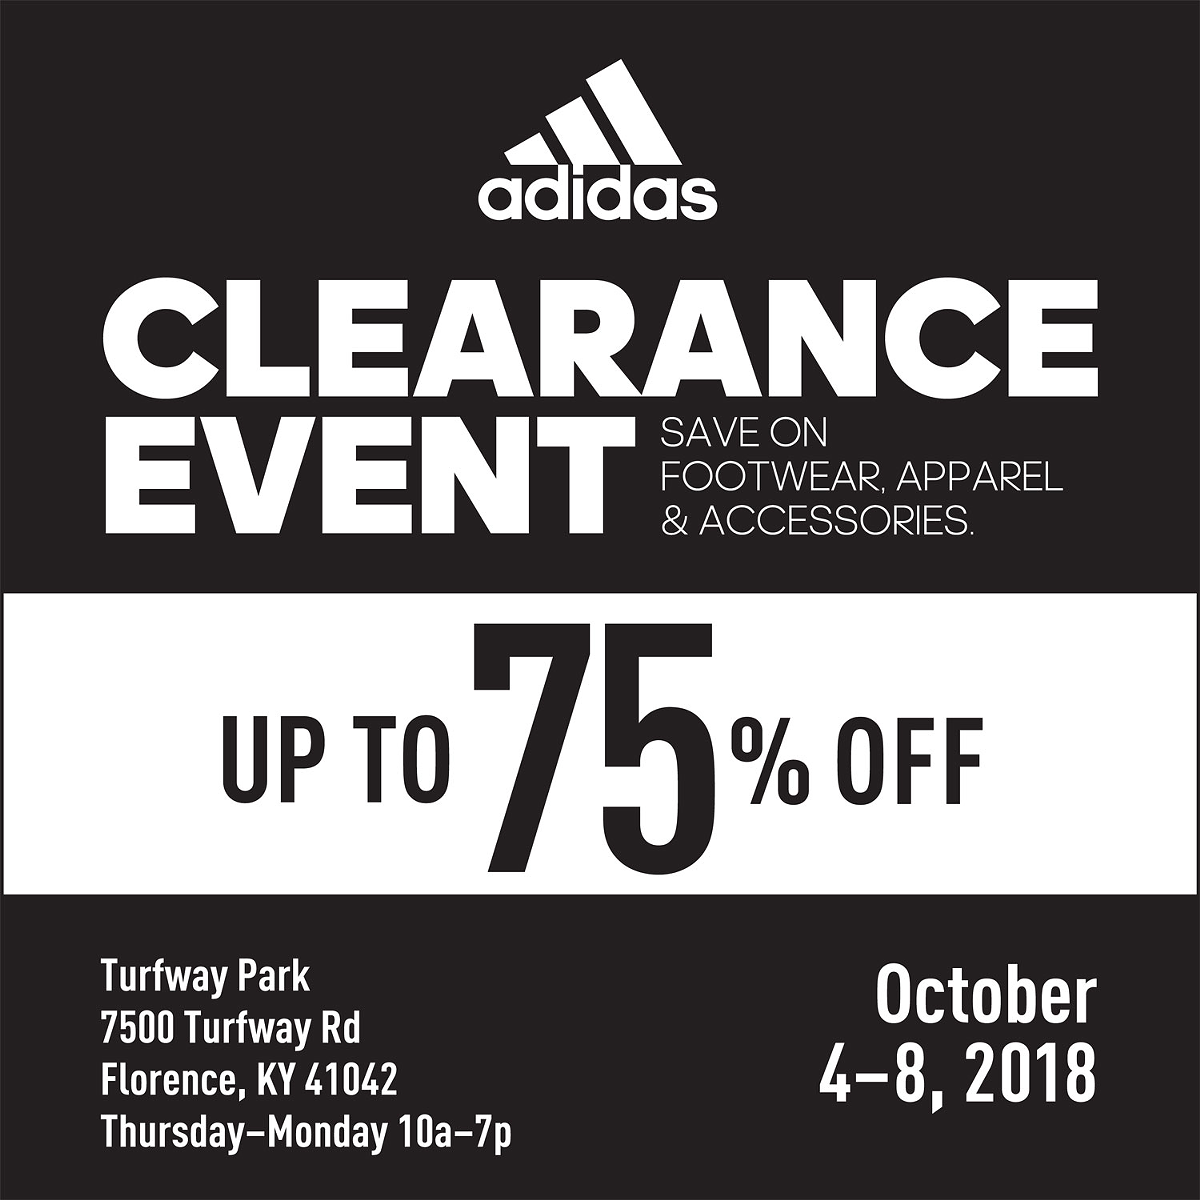 Adidas Tent Sale Cincinnati CityBeat